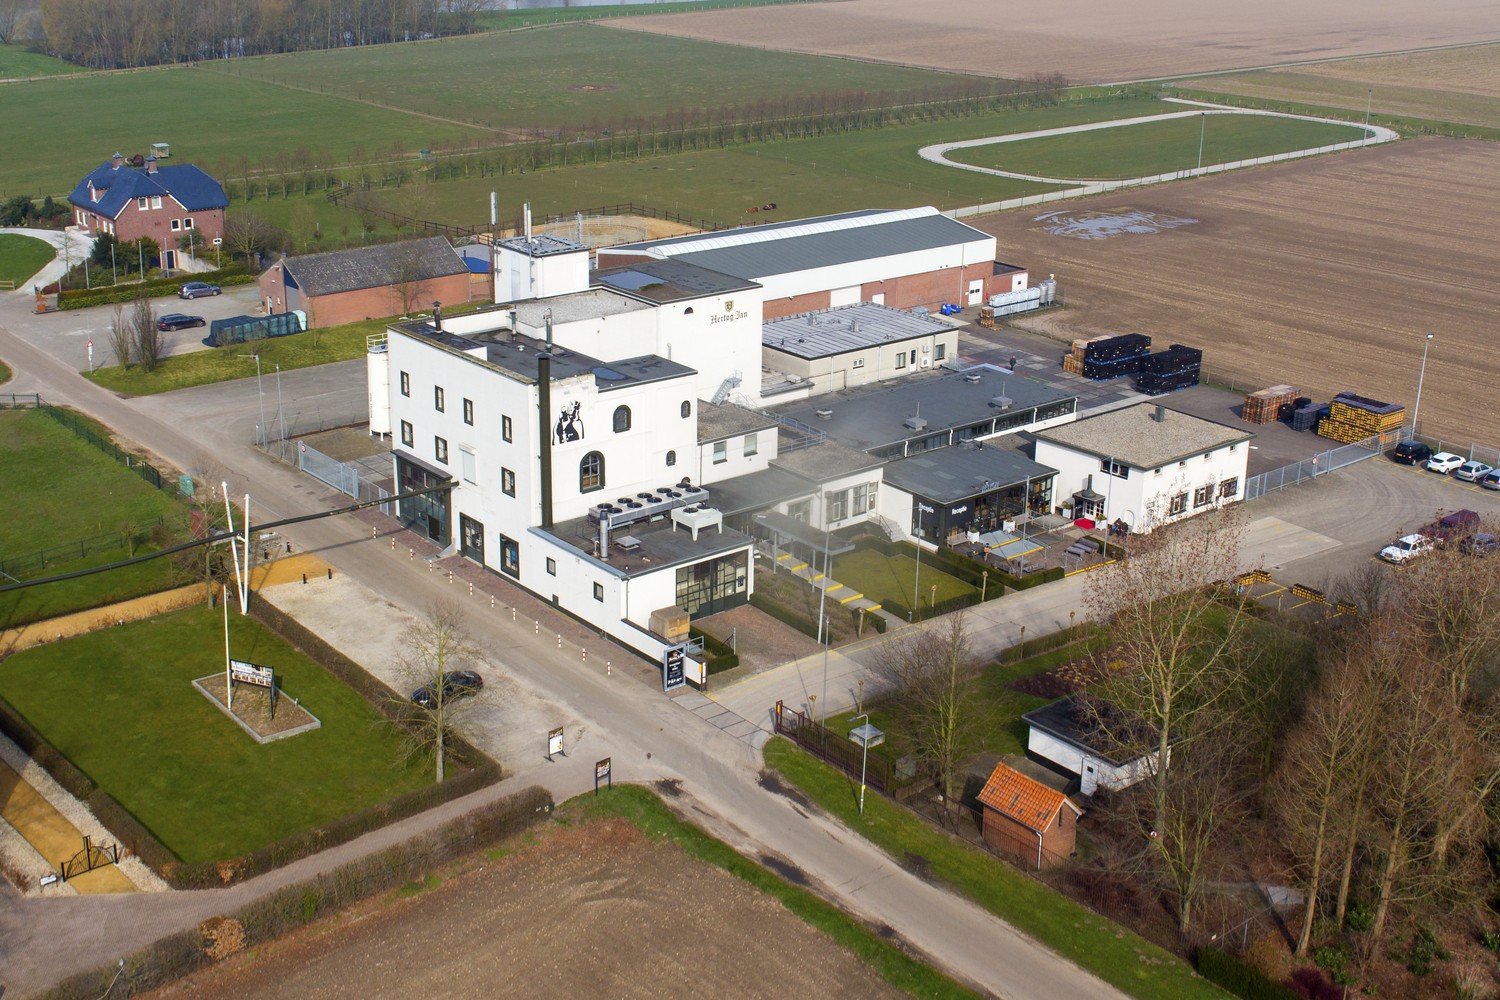 Hertog Jan Brouwerij brewery from Netherlands